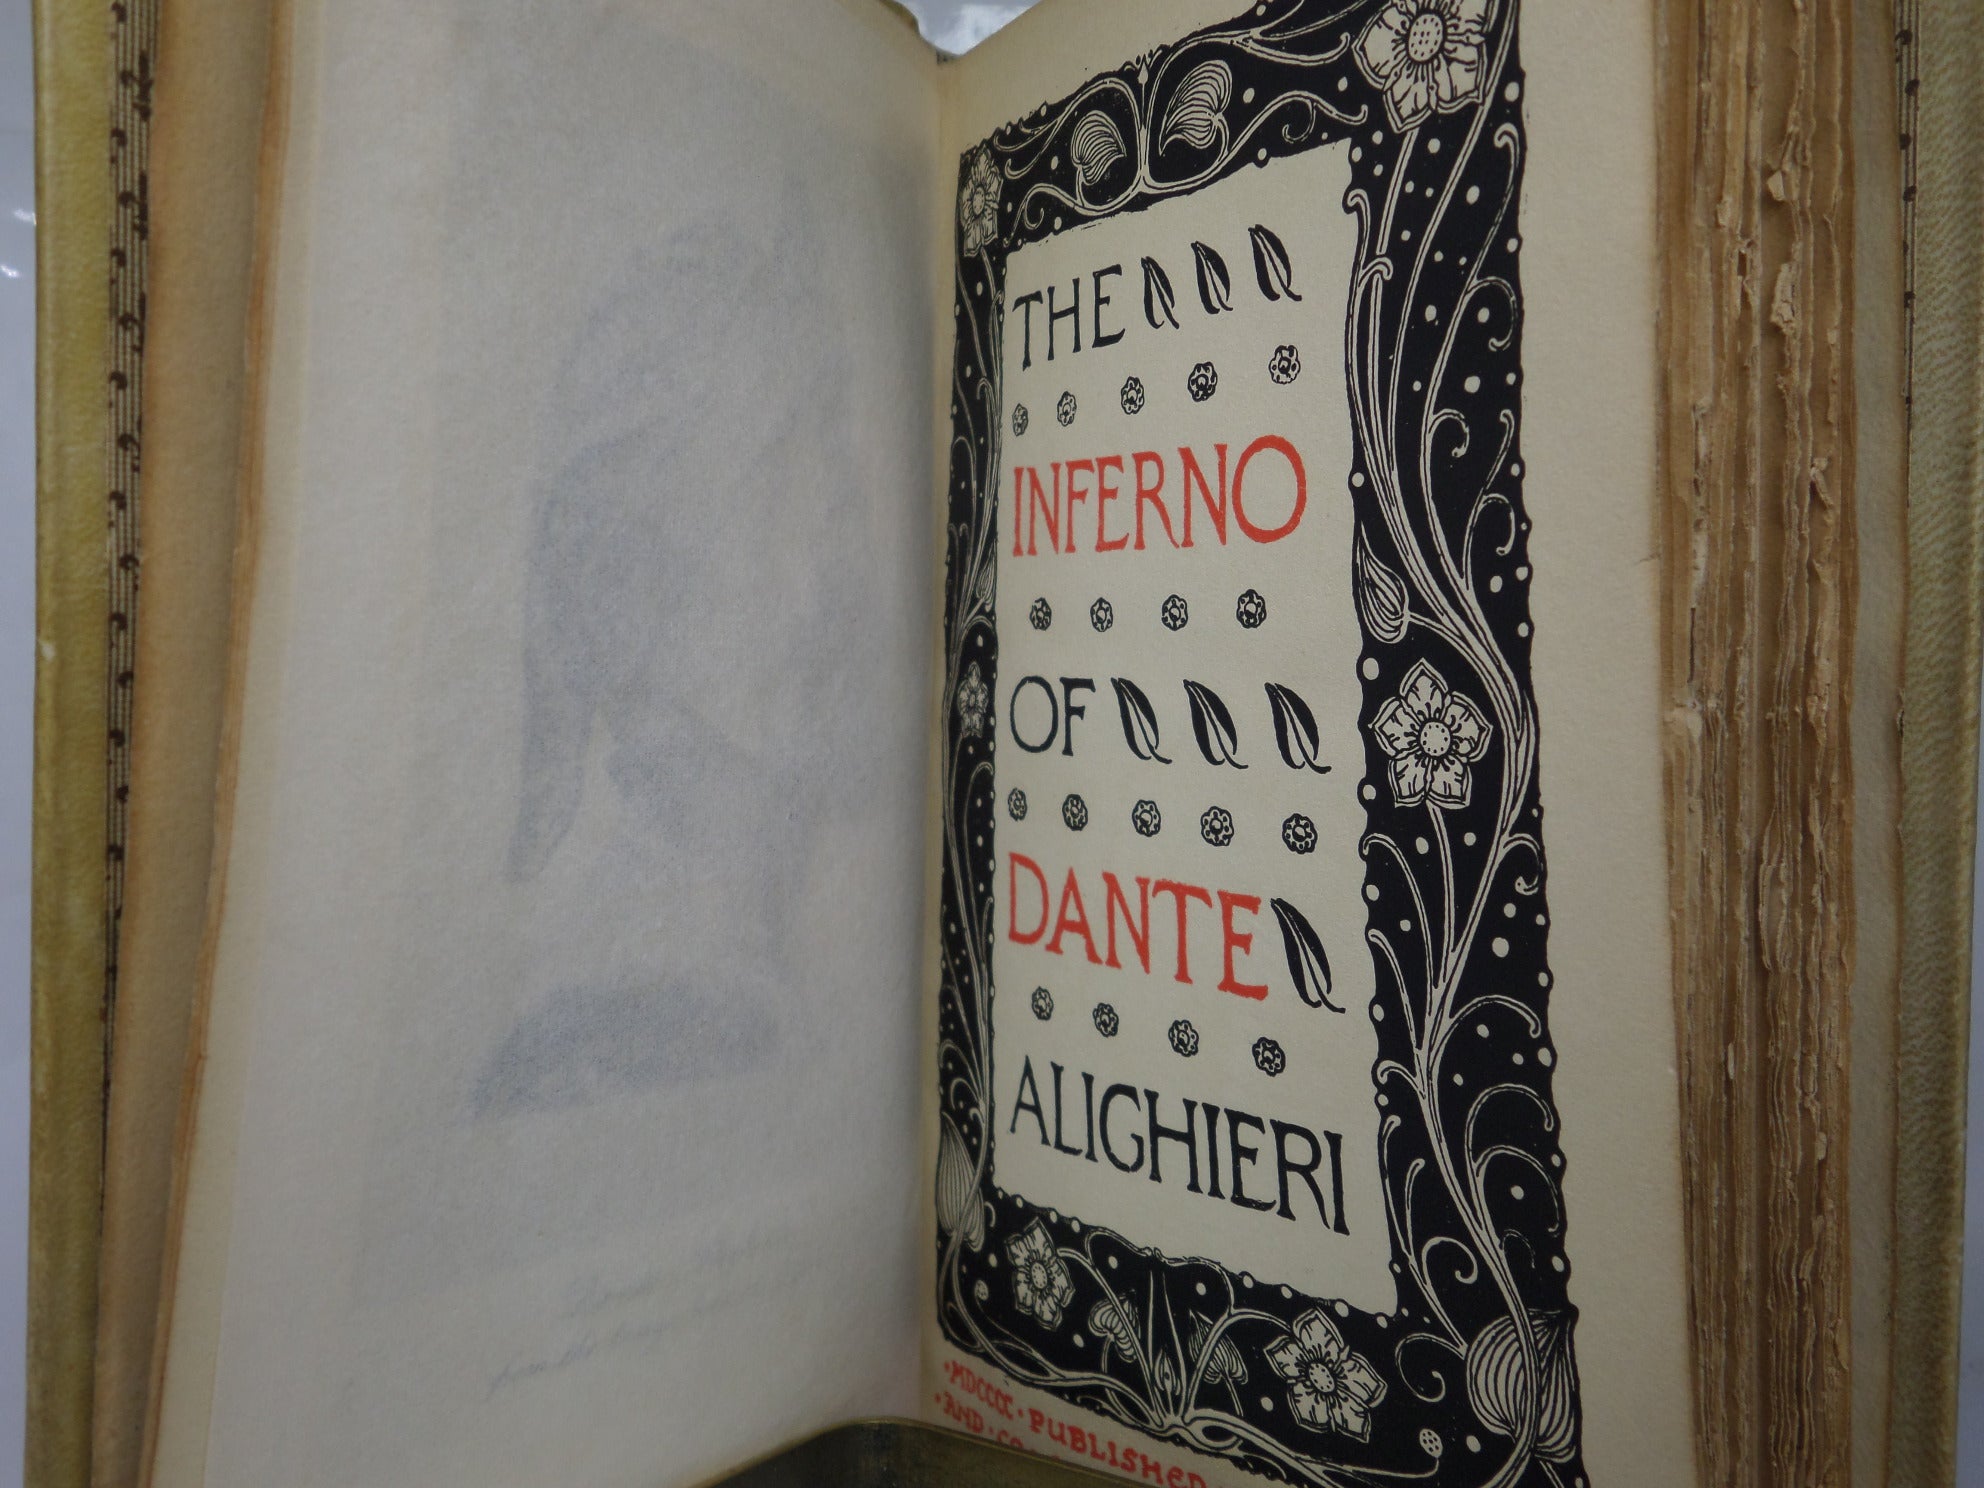 THE INFERNO OF DANTE ALIGHIERI 1900 HAND-PAINTED VELLUM BINDING BY GIANNINI